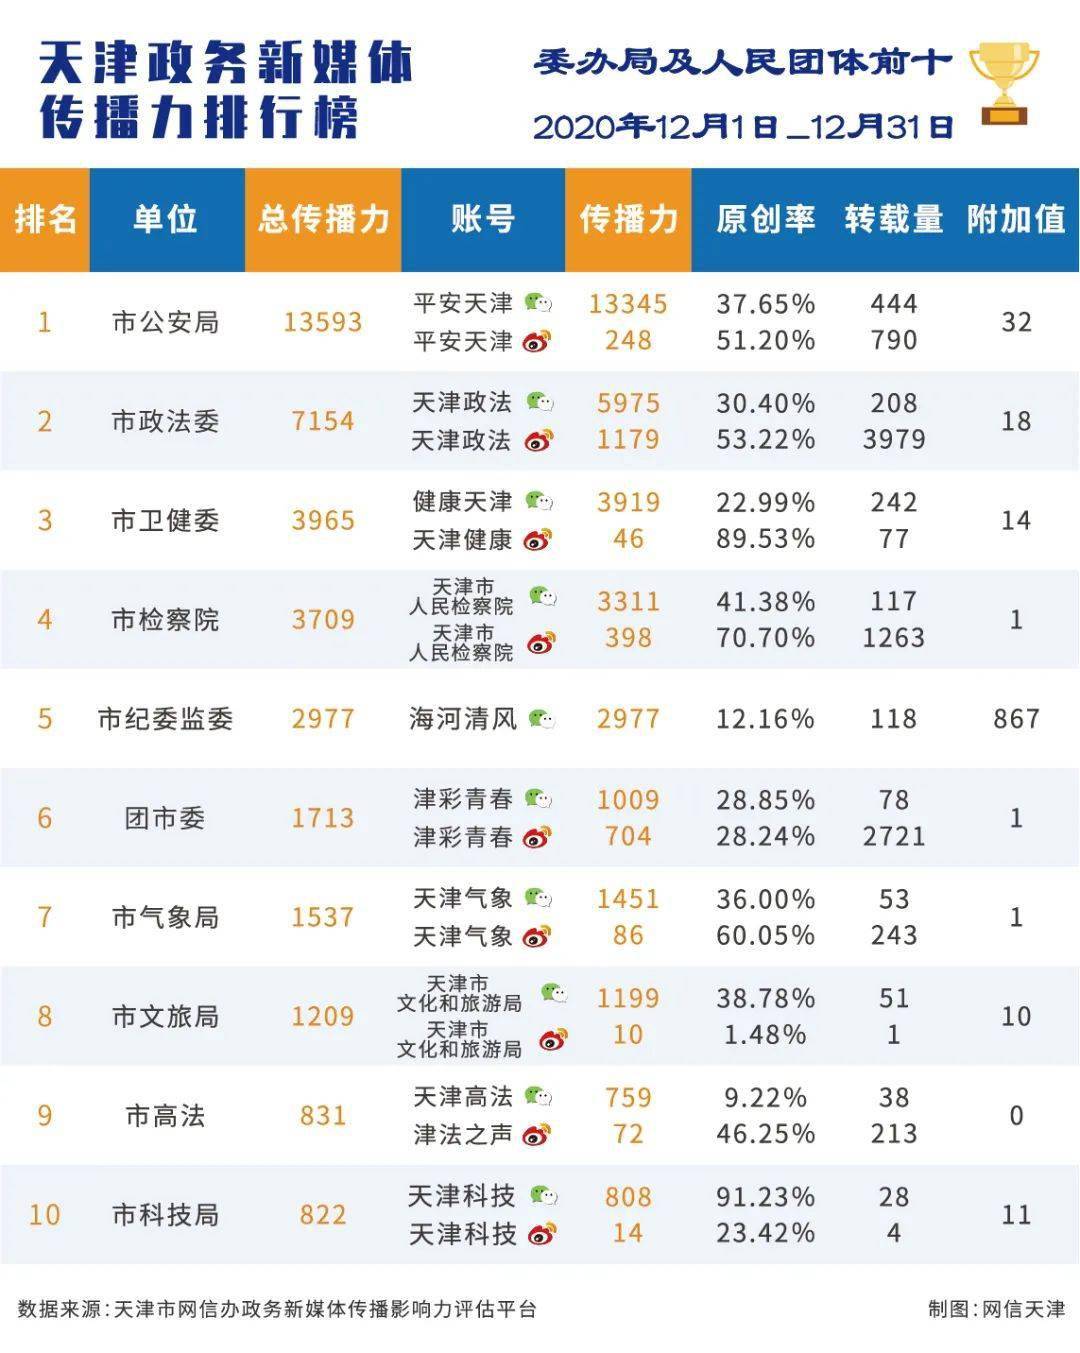 
2020年12月份天津政务新媒体流传影响力排行榜“安博ap